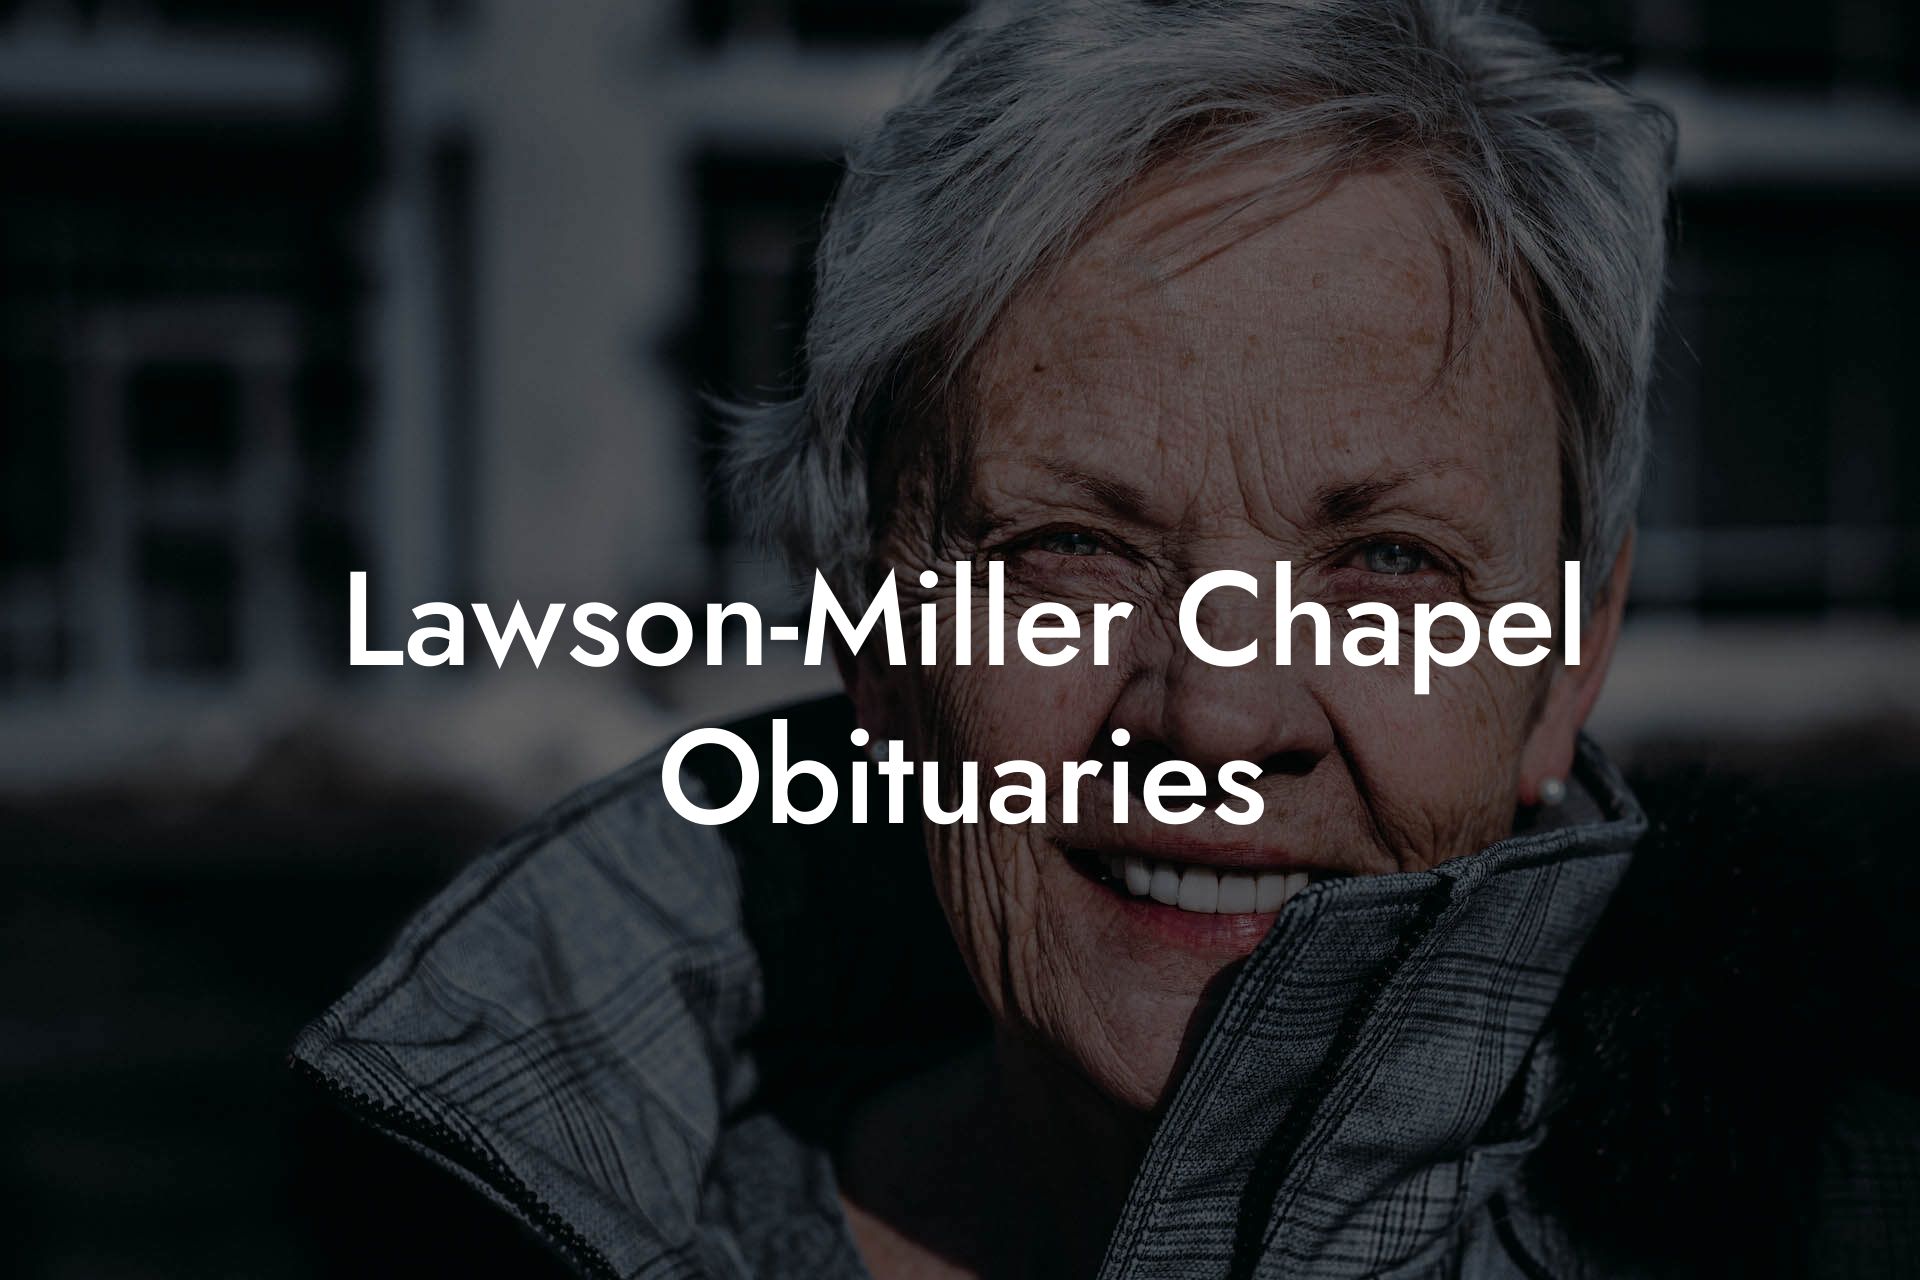 Lawson-Miller Chapel Obituaries